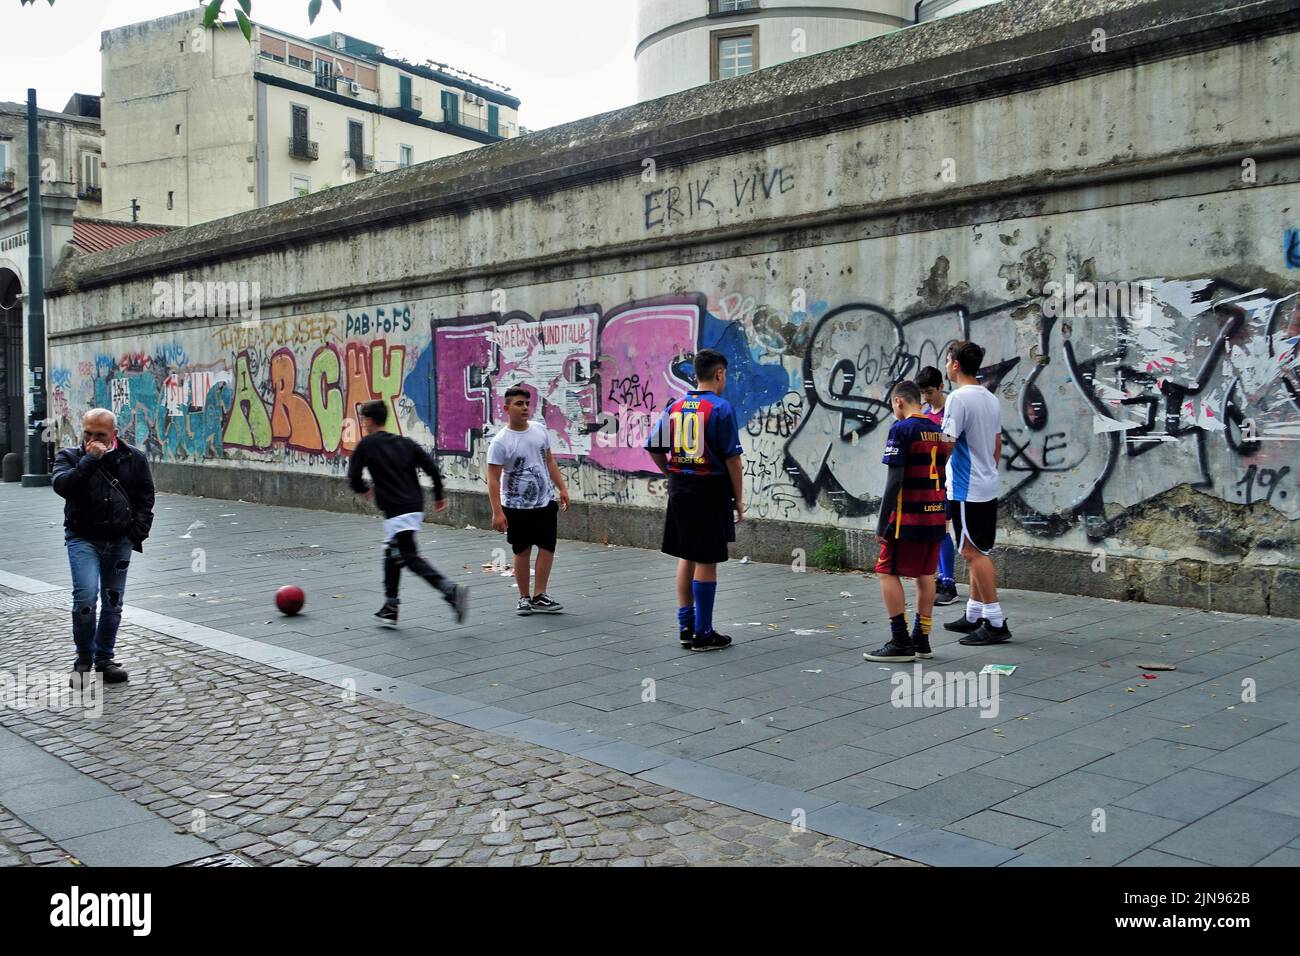 Graffiti murali di Wall art, bambini che giocano a calcio in strada, Napoli, Campania, Italia, Europa Foto Stock